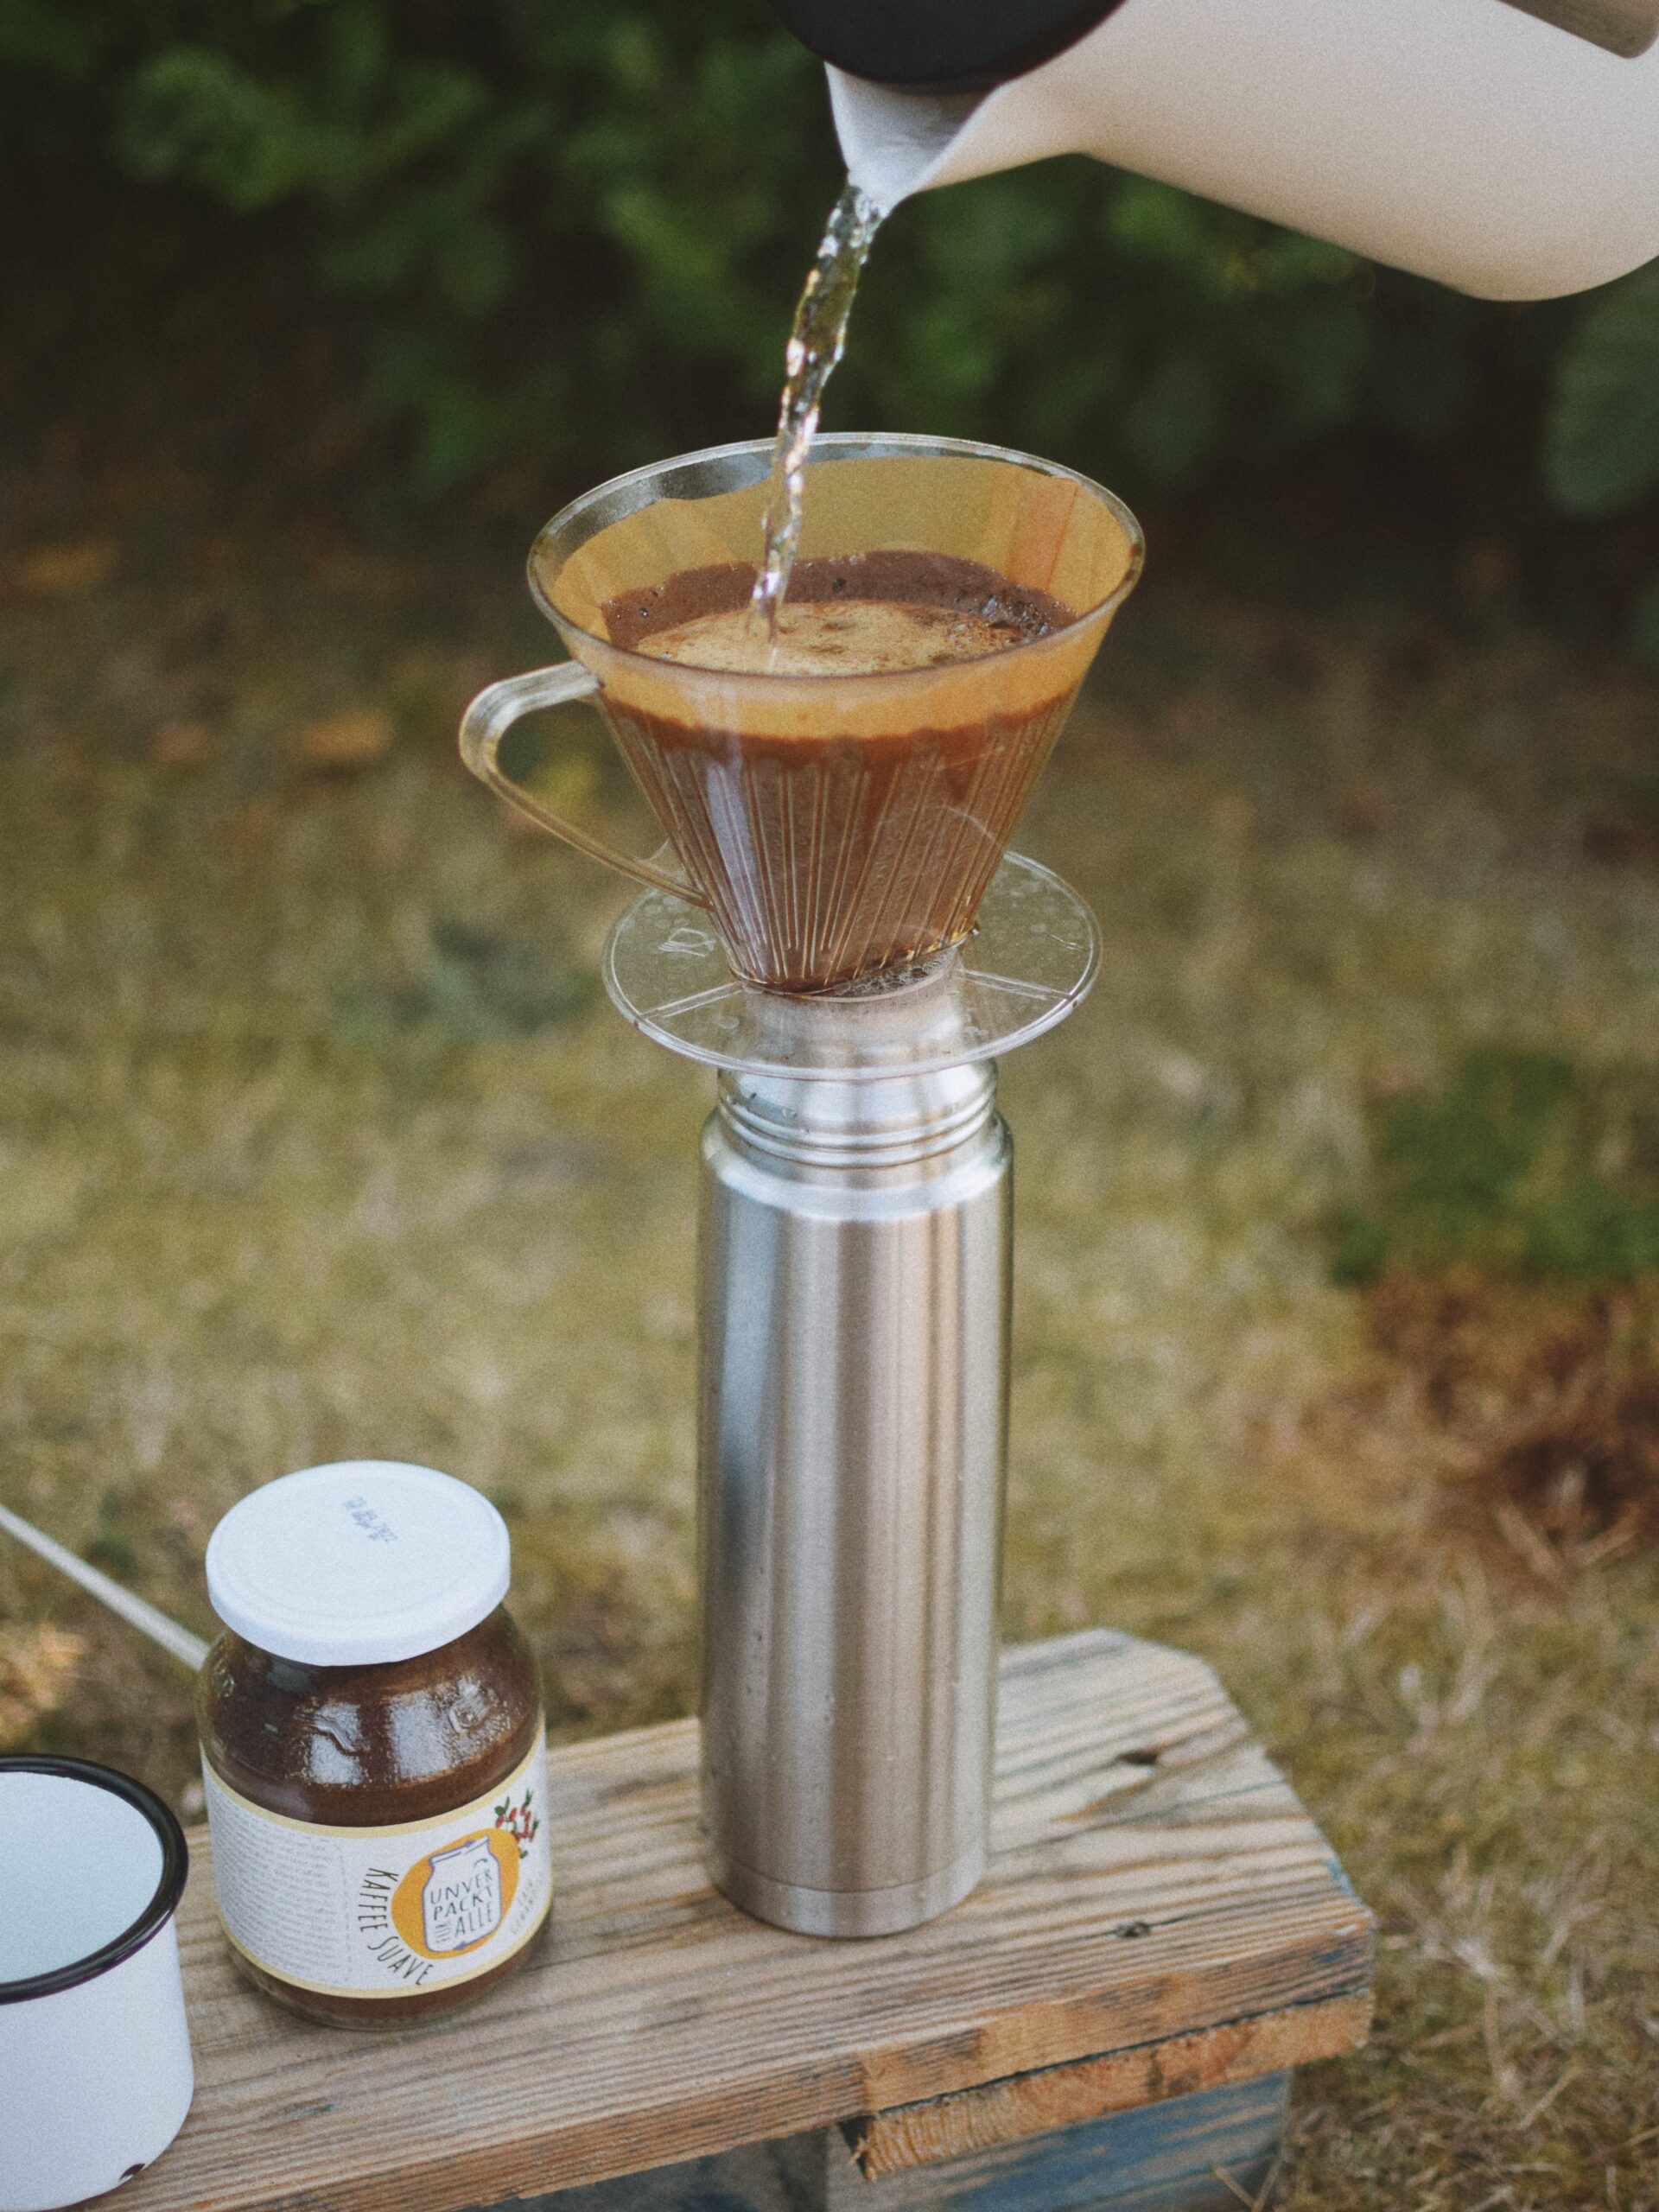 filterkaffee läuft in thermoskanne, daneben kaffee im mehrwegglas